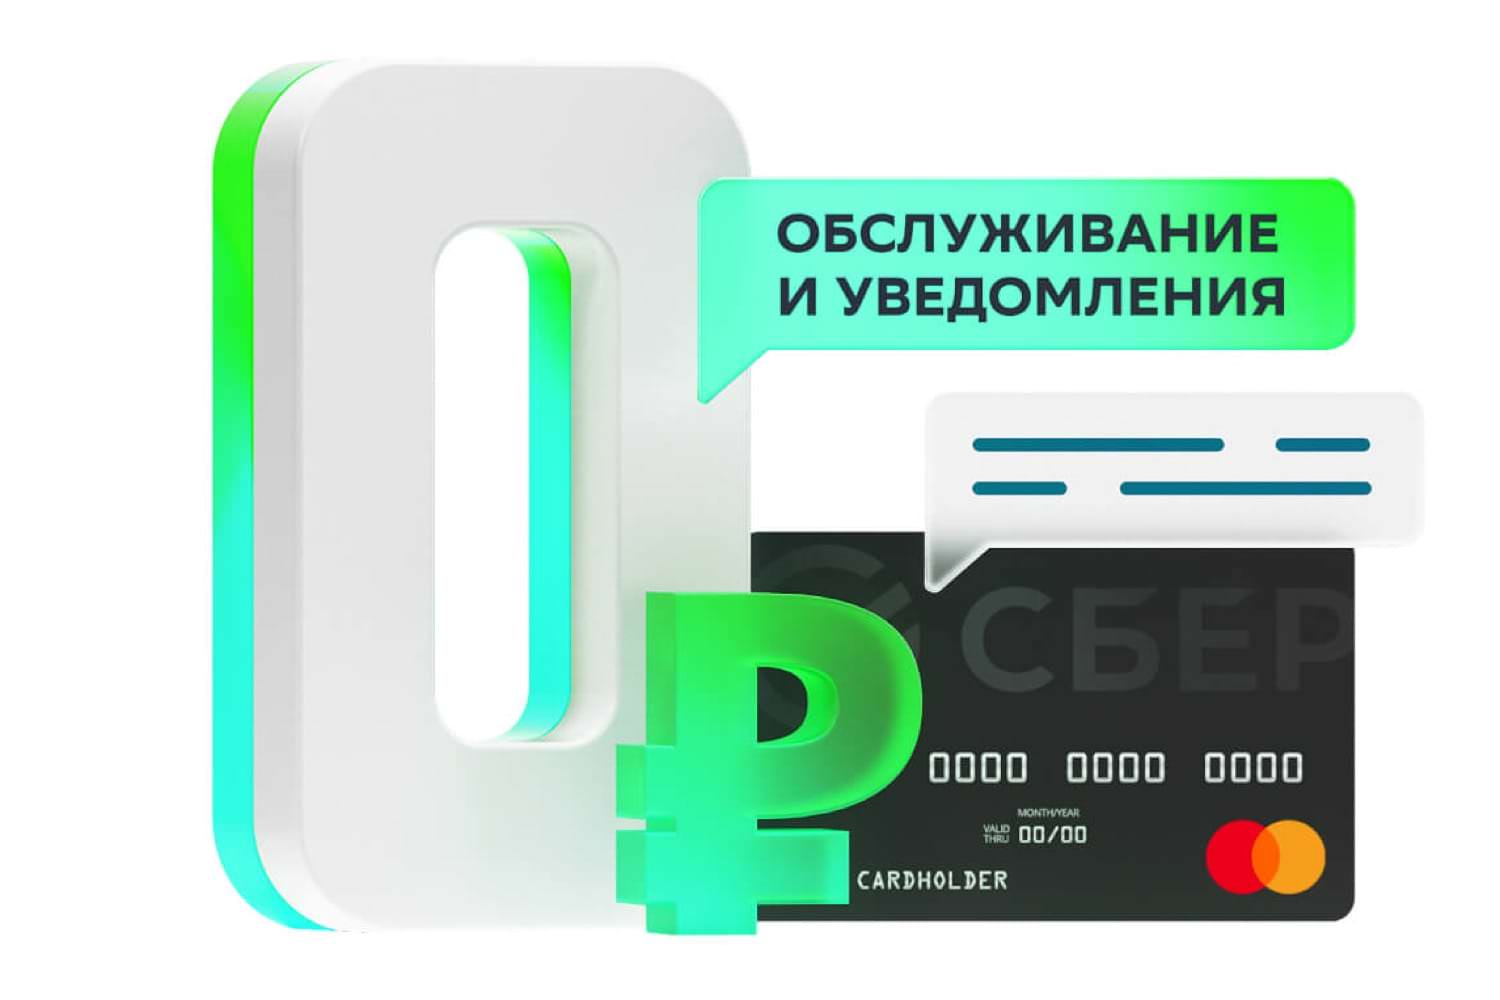 «Сбербанк» дарит по 1 000 рублей всем, кто получит новую банковскую карту